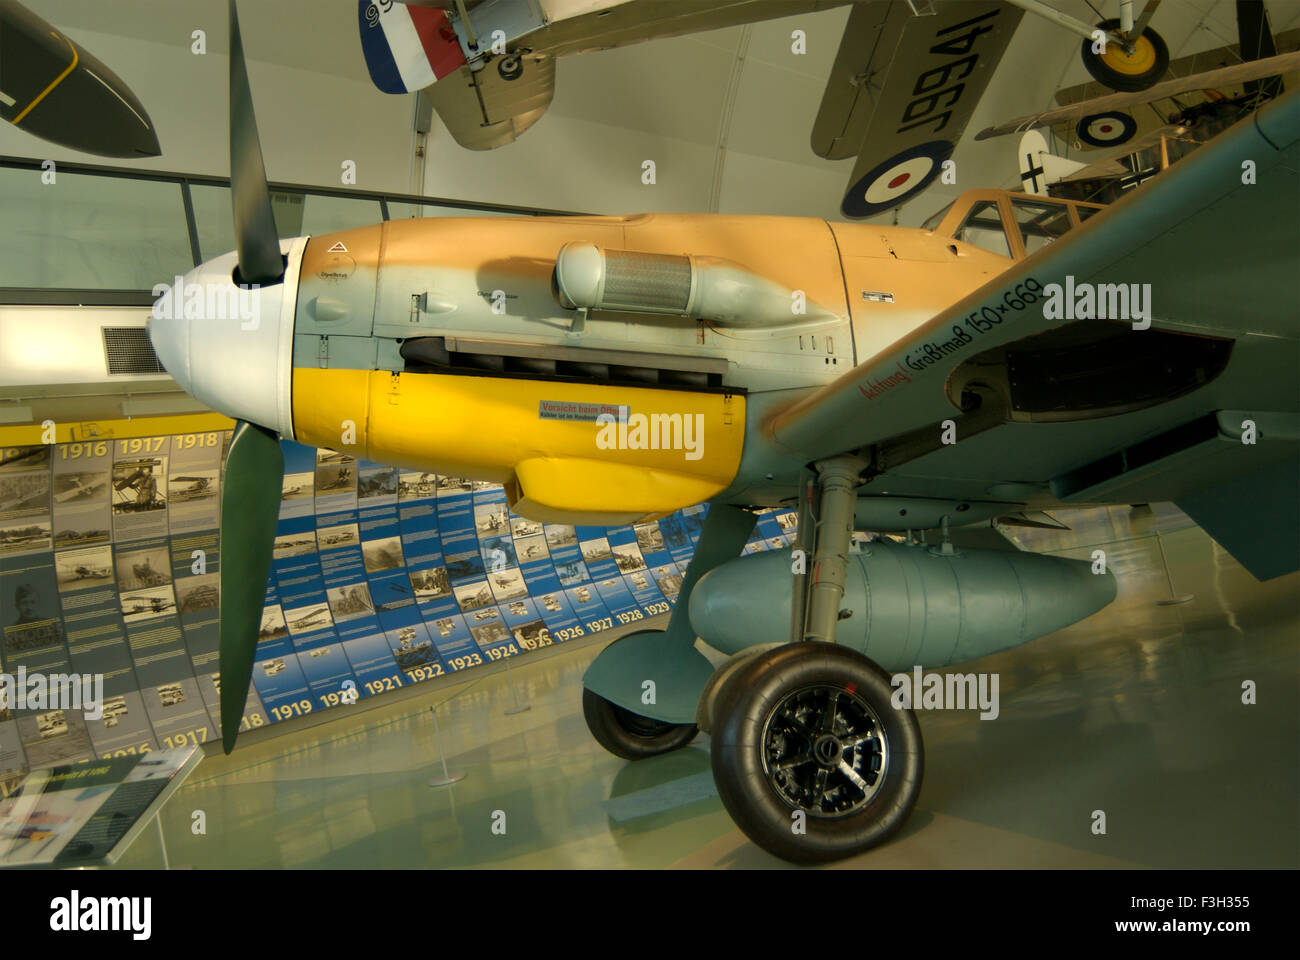 Avion de chasse dans la Royal Air Force Museum ; Londres ; Royaume-Uni Royaume-Uni Angleterre Banque D'Images